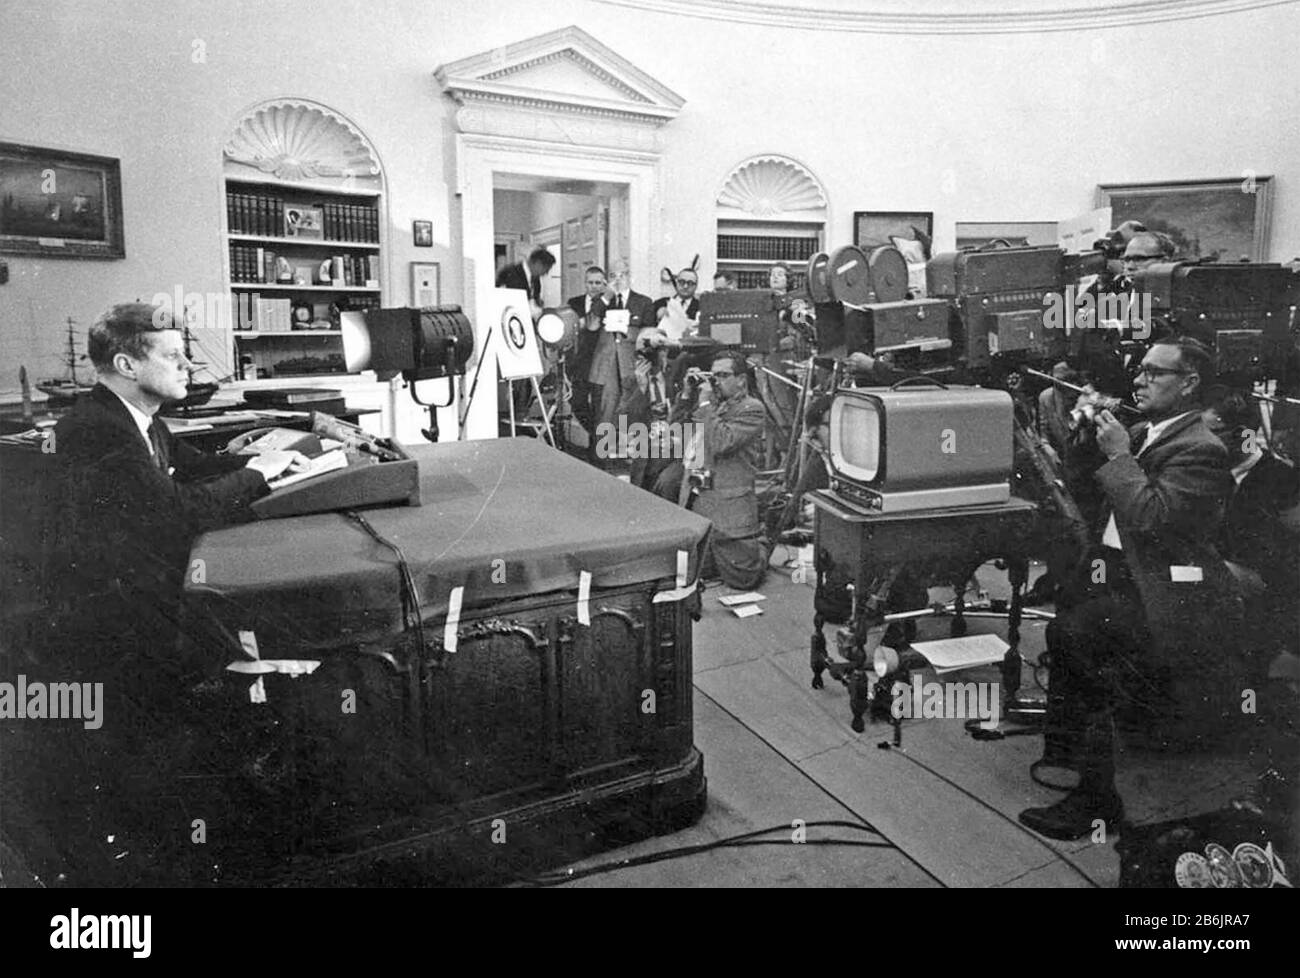 CRISE DES MISSILES CUBAINS OCTOBRE 1962. Le président américain John F. Kennedy avec des journalistes à la Maison Blanche lors d'un discours télévisé à l'intention de la nation sur le blocus de Cuba, 24 octobre 1962. Banque D'Images